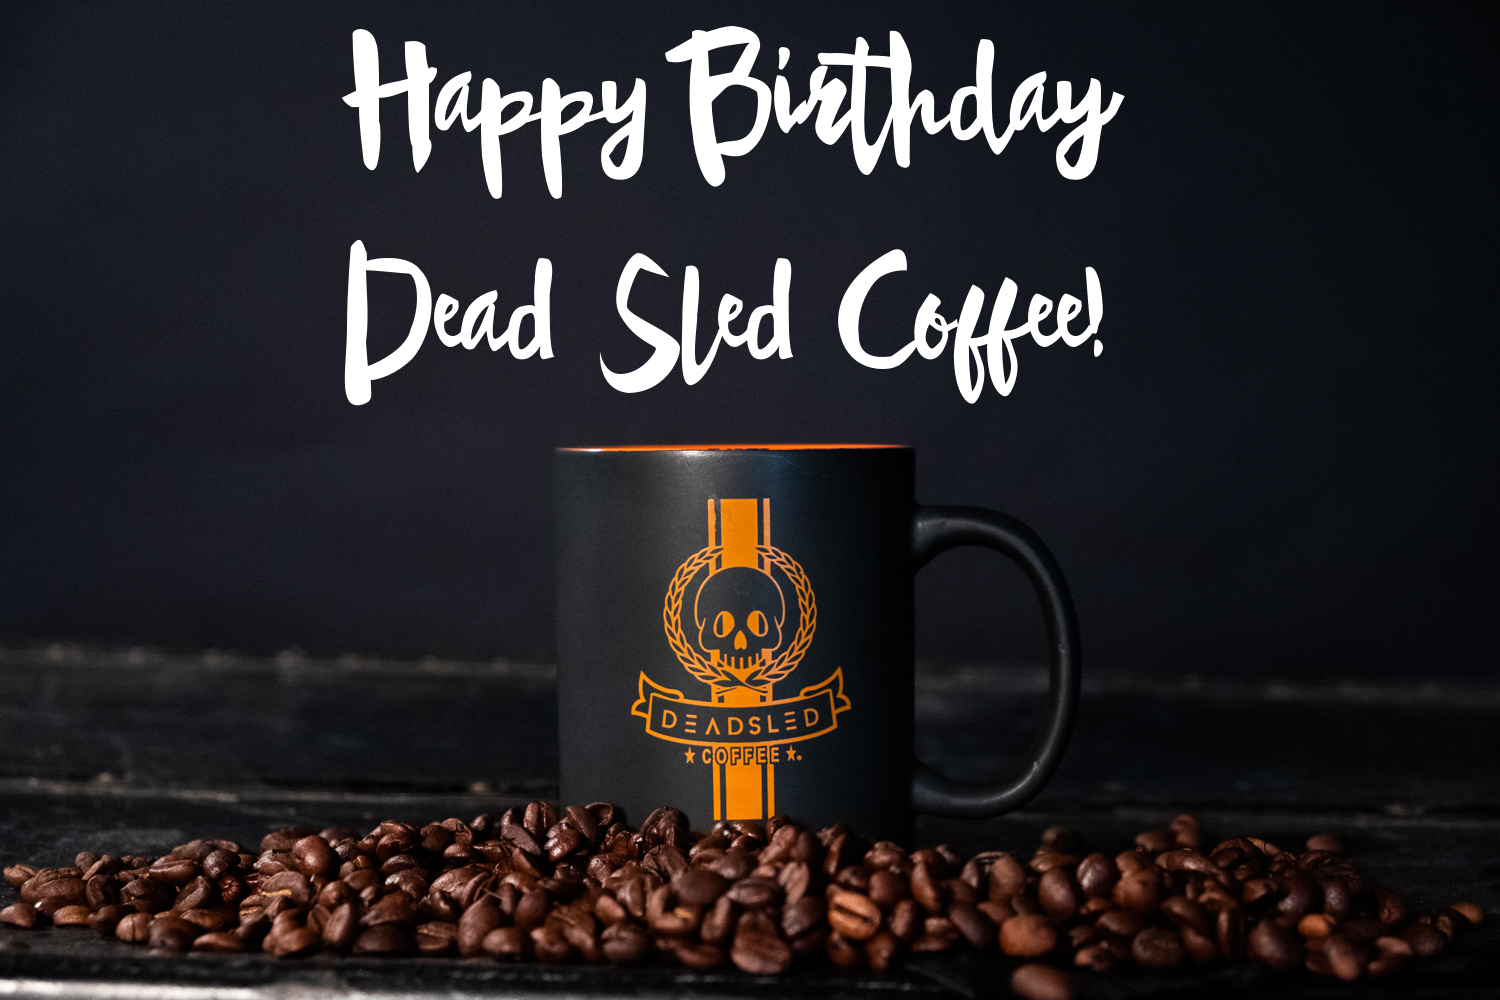 Happy Birthday Dead Sled Coffee - A Mike W Blog